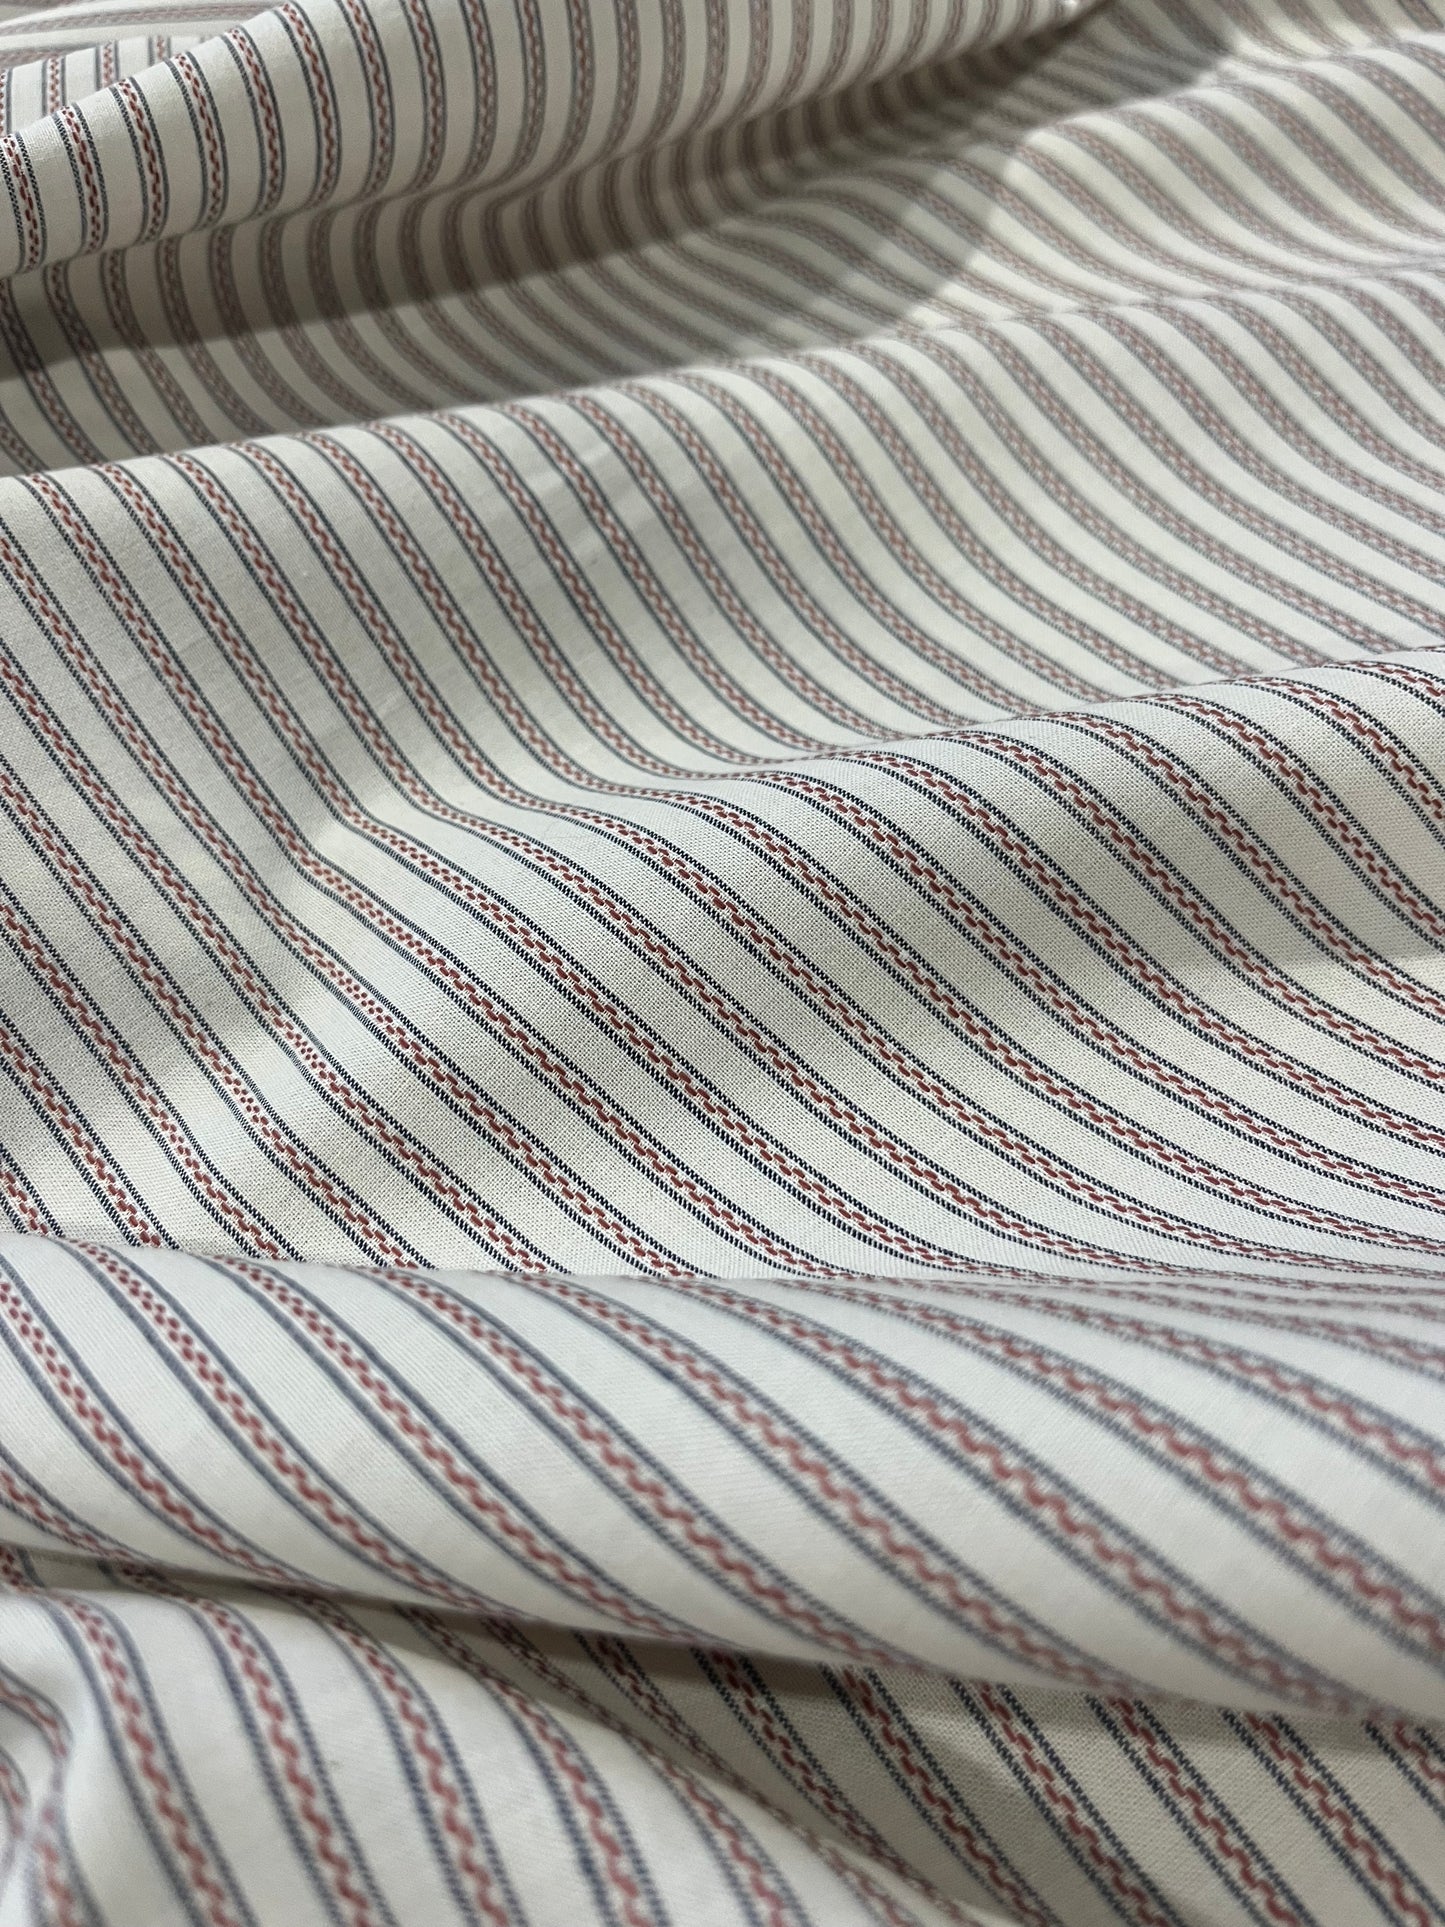 TRENTO 004 woven cotton stripe ecru/brique/navy